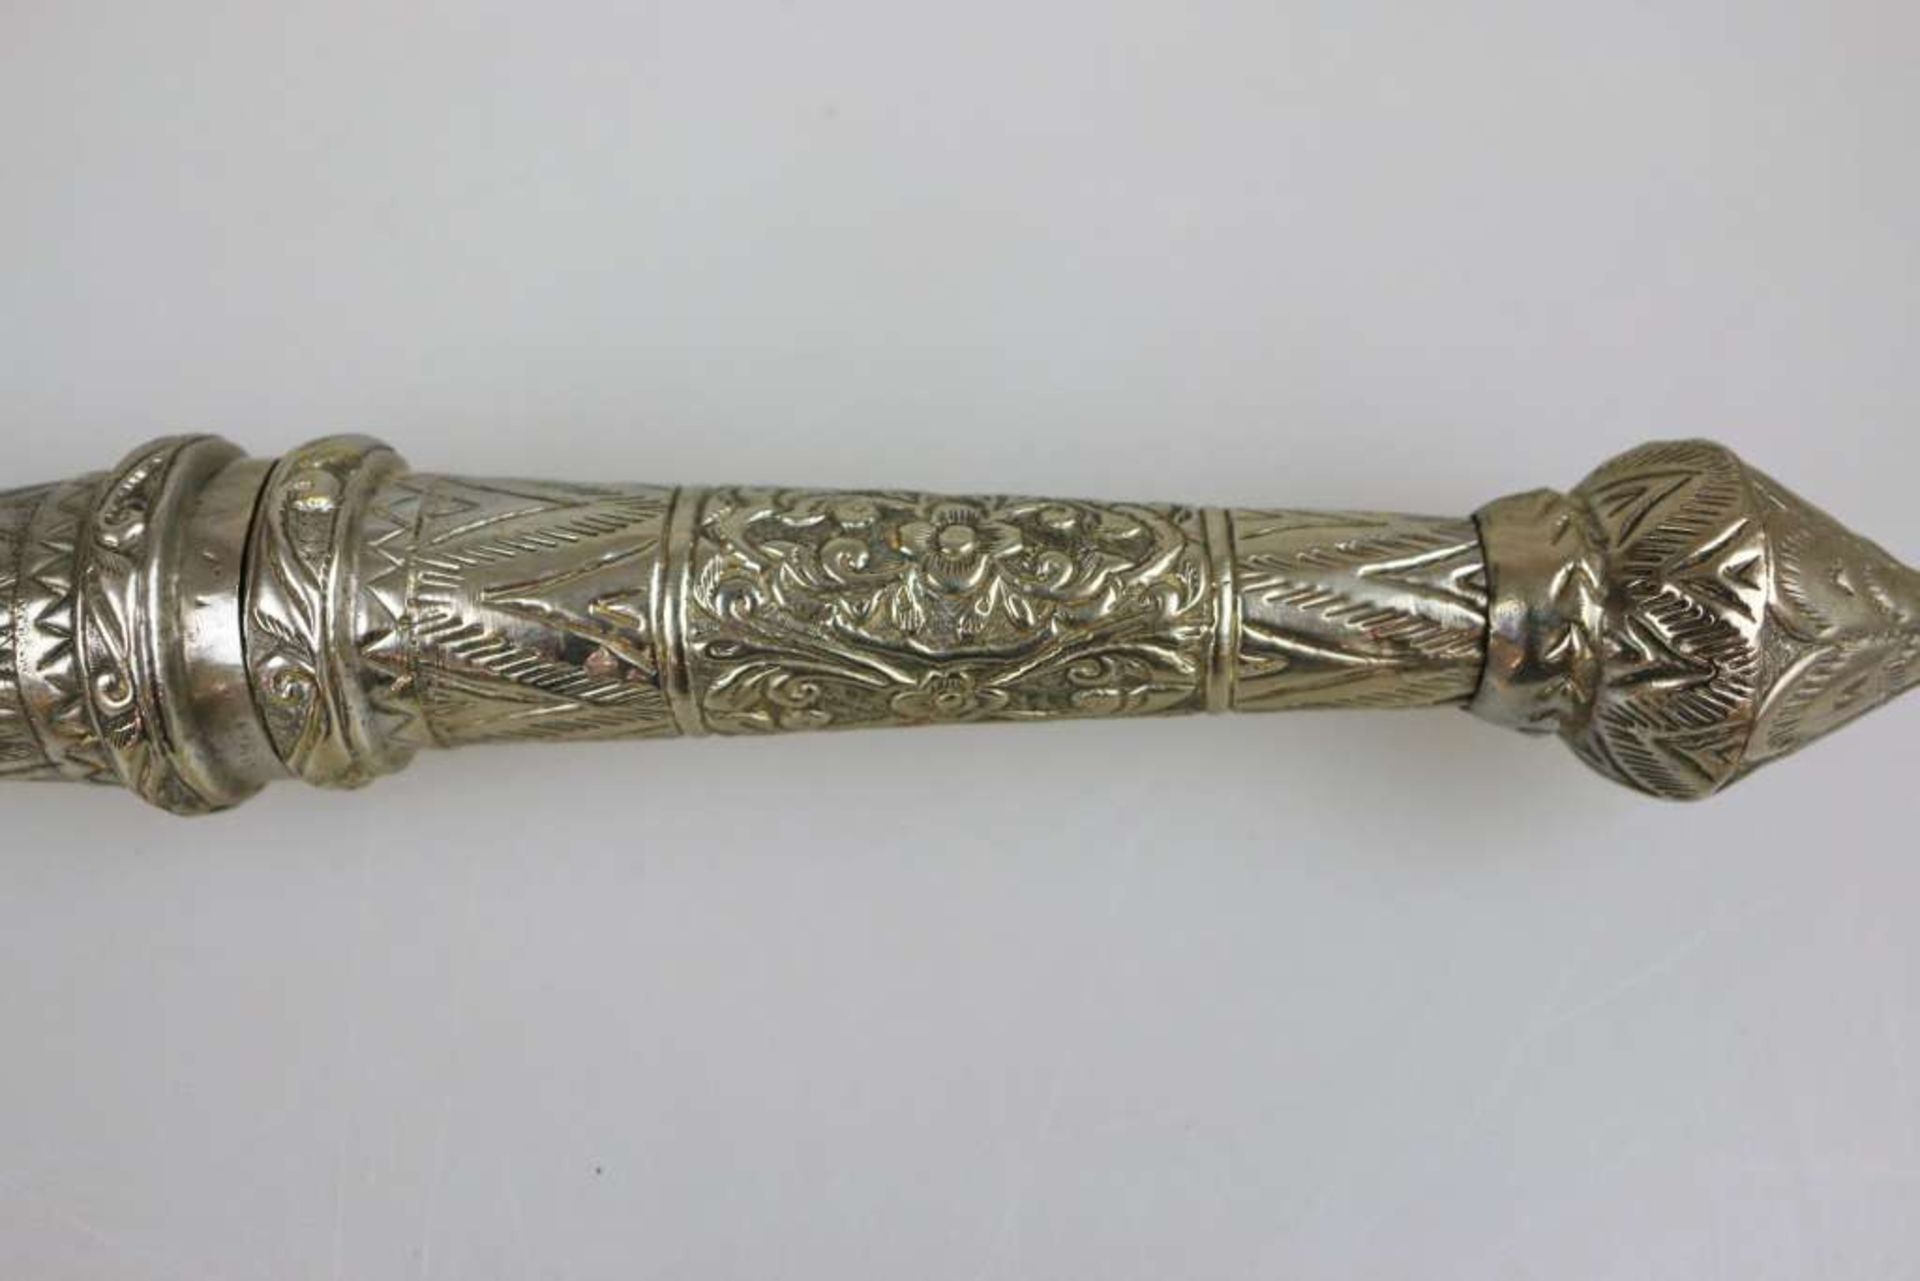 Dha, Kurzschwert Burma, um 1900, Klinge beidseitig mit figürlichen Darstellungen und Ornamenten, - Bild 3 aus 4